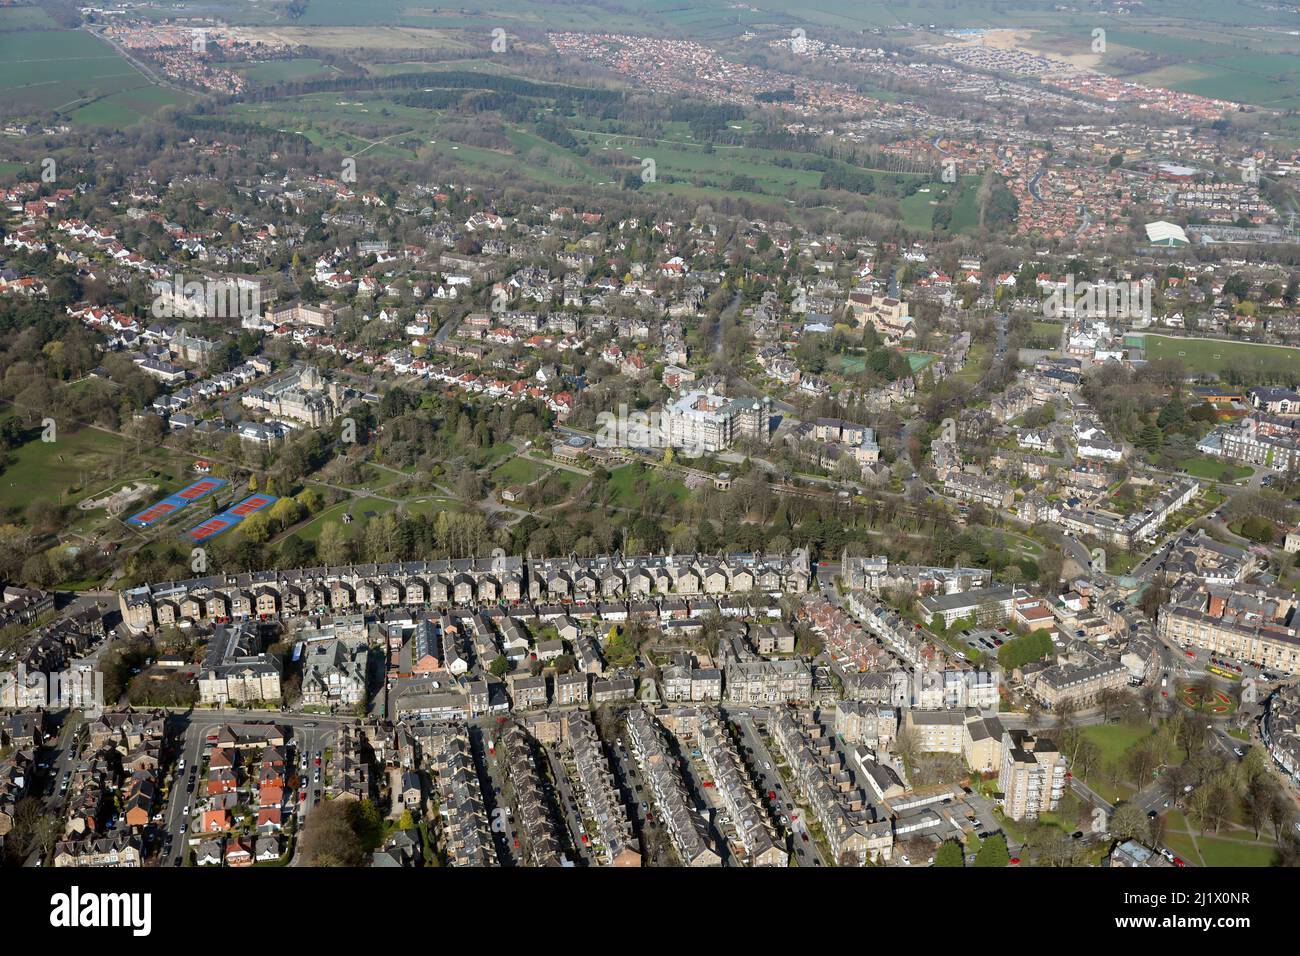 Luftaufnahme nach Nordwesten über Valley Gardens, Harrogate, North Yorkshire; Killinghall Moor Country Park kann in der Ferne gesehen werden Stockfoto